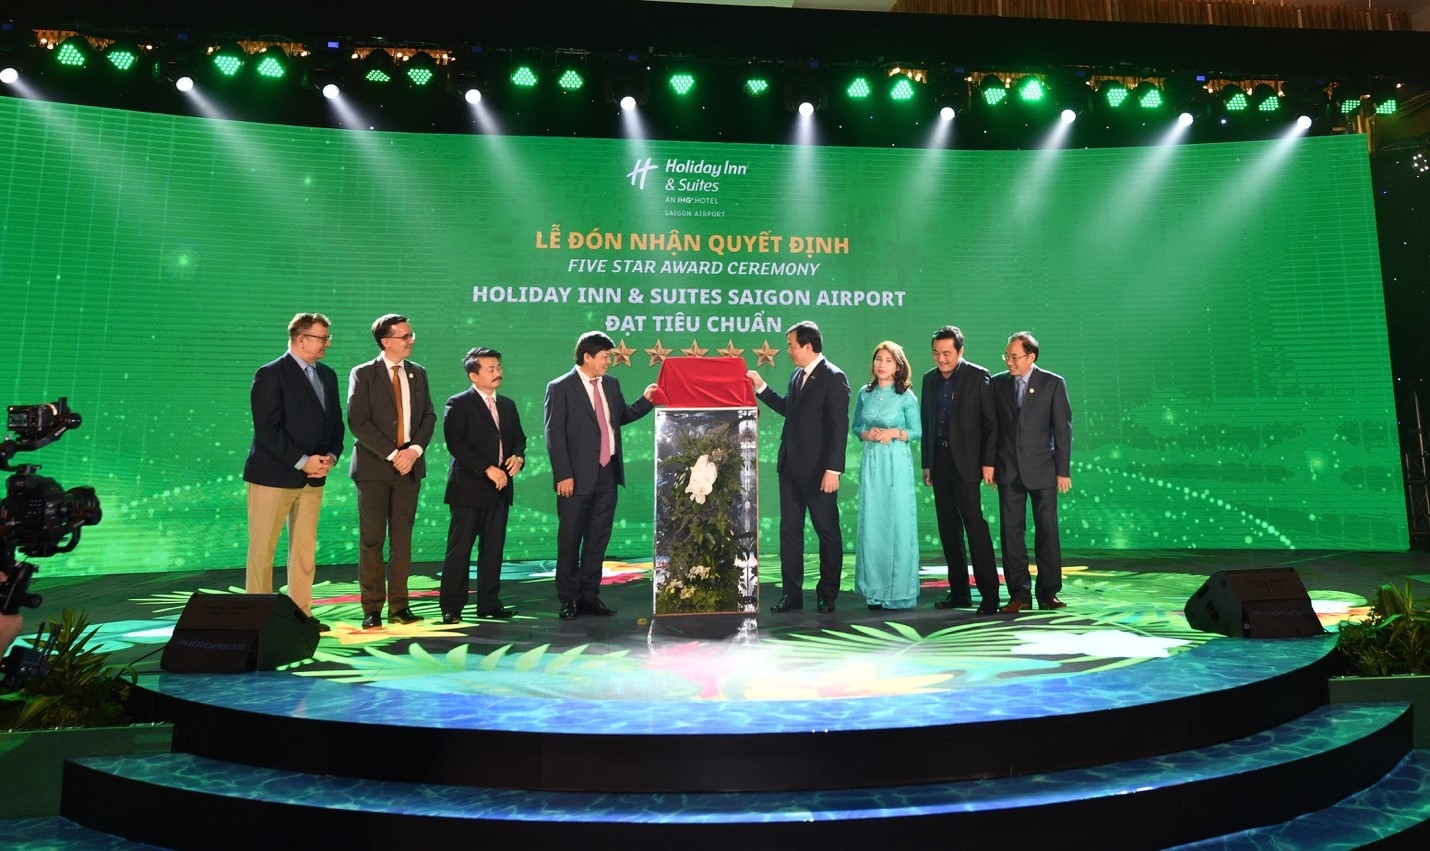 Khách sạn Holiday Inn & Suites đầu tiên tại Việt Nam đạt chứng nhận 5 sao